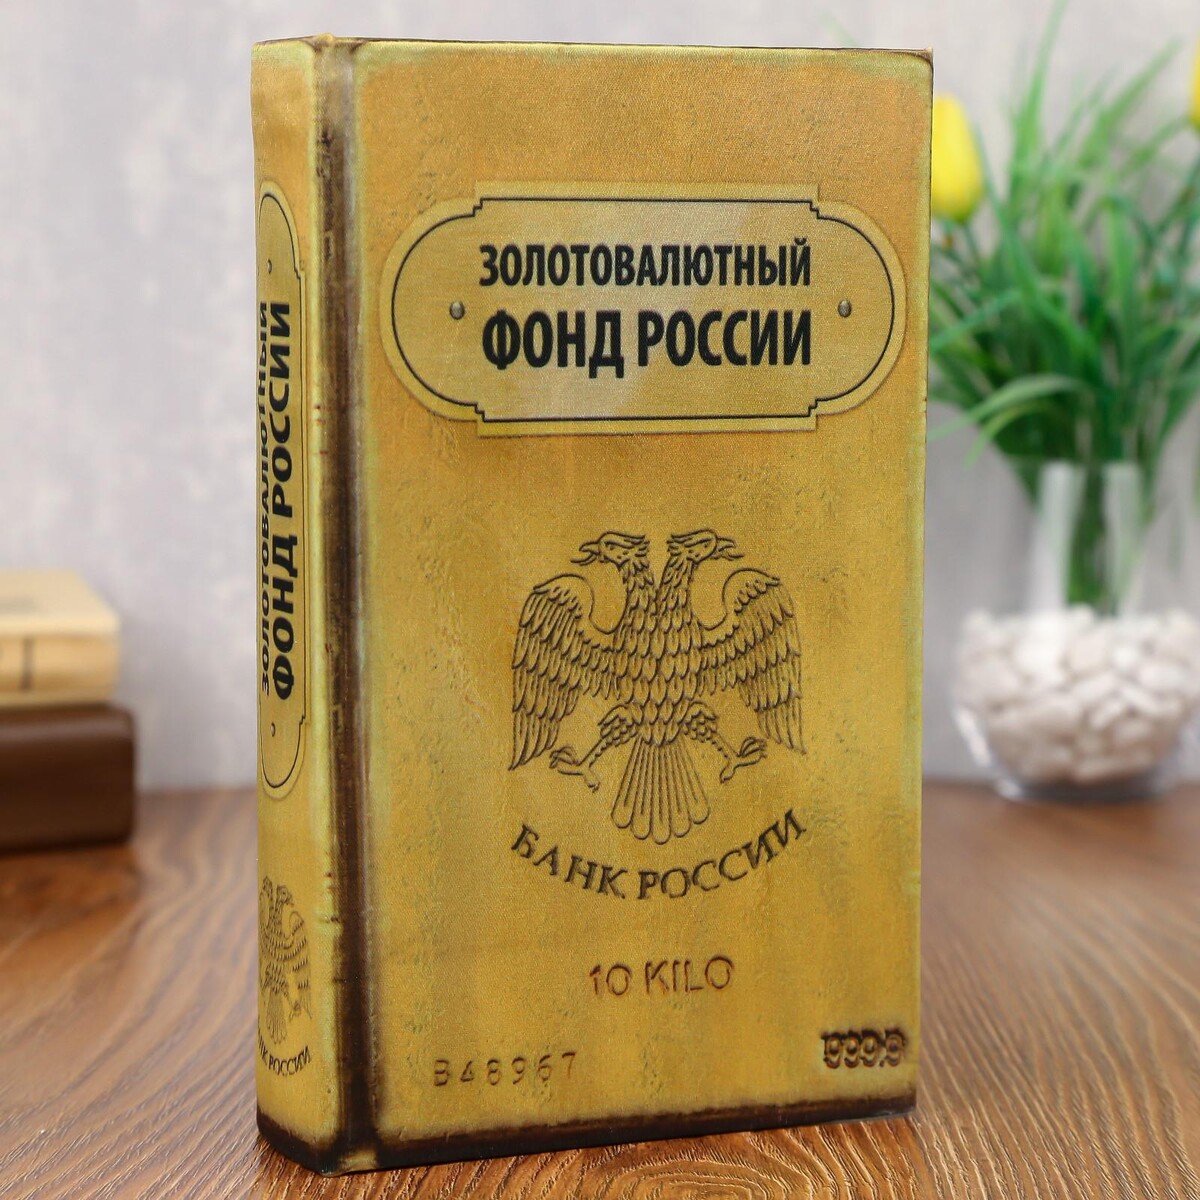 Сейф дерево книга золотовалютный фонд россии 21*13*5 см беспризорные бродячее детство в советской россии